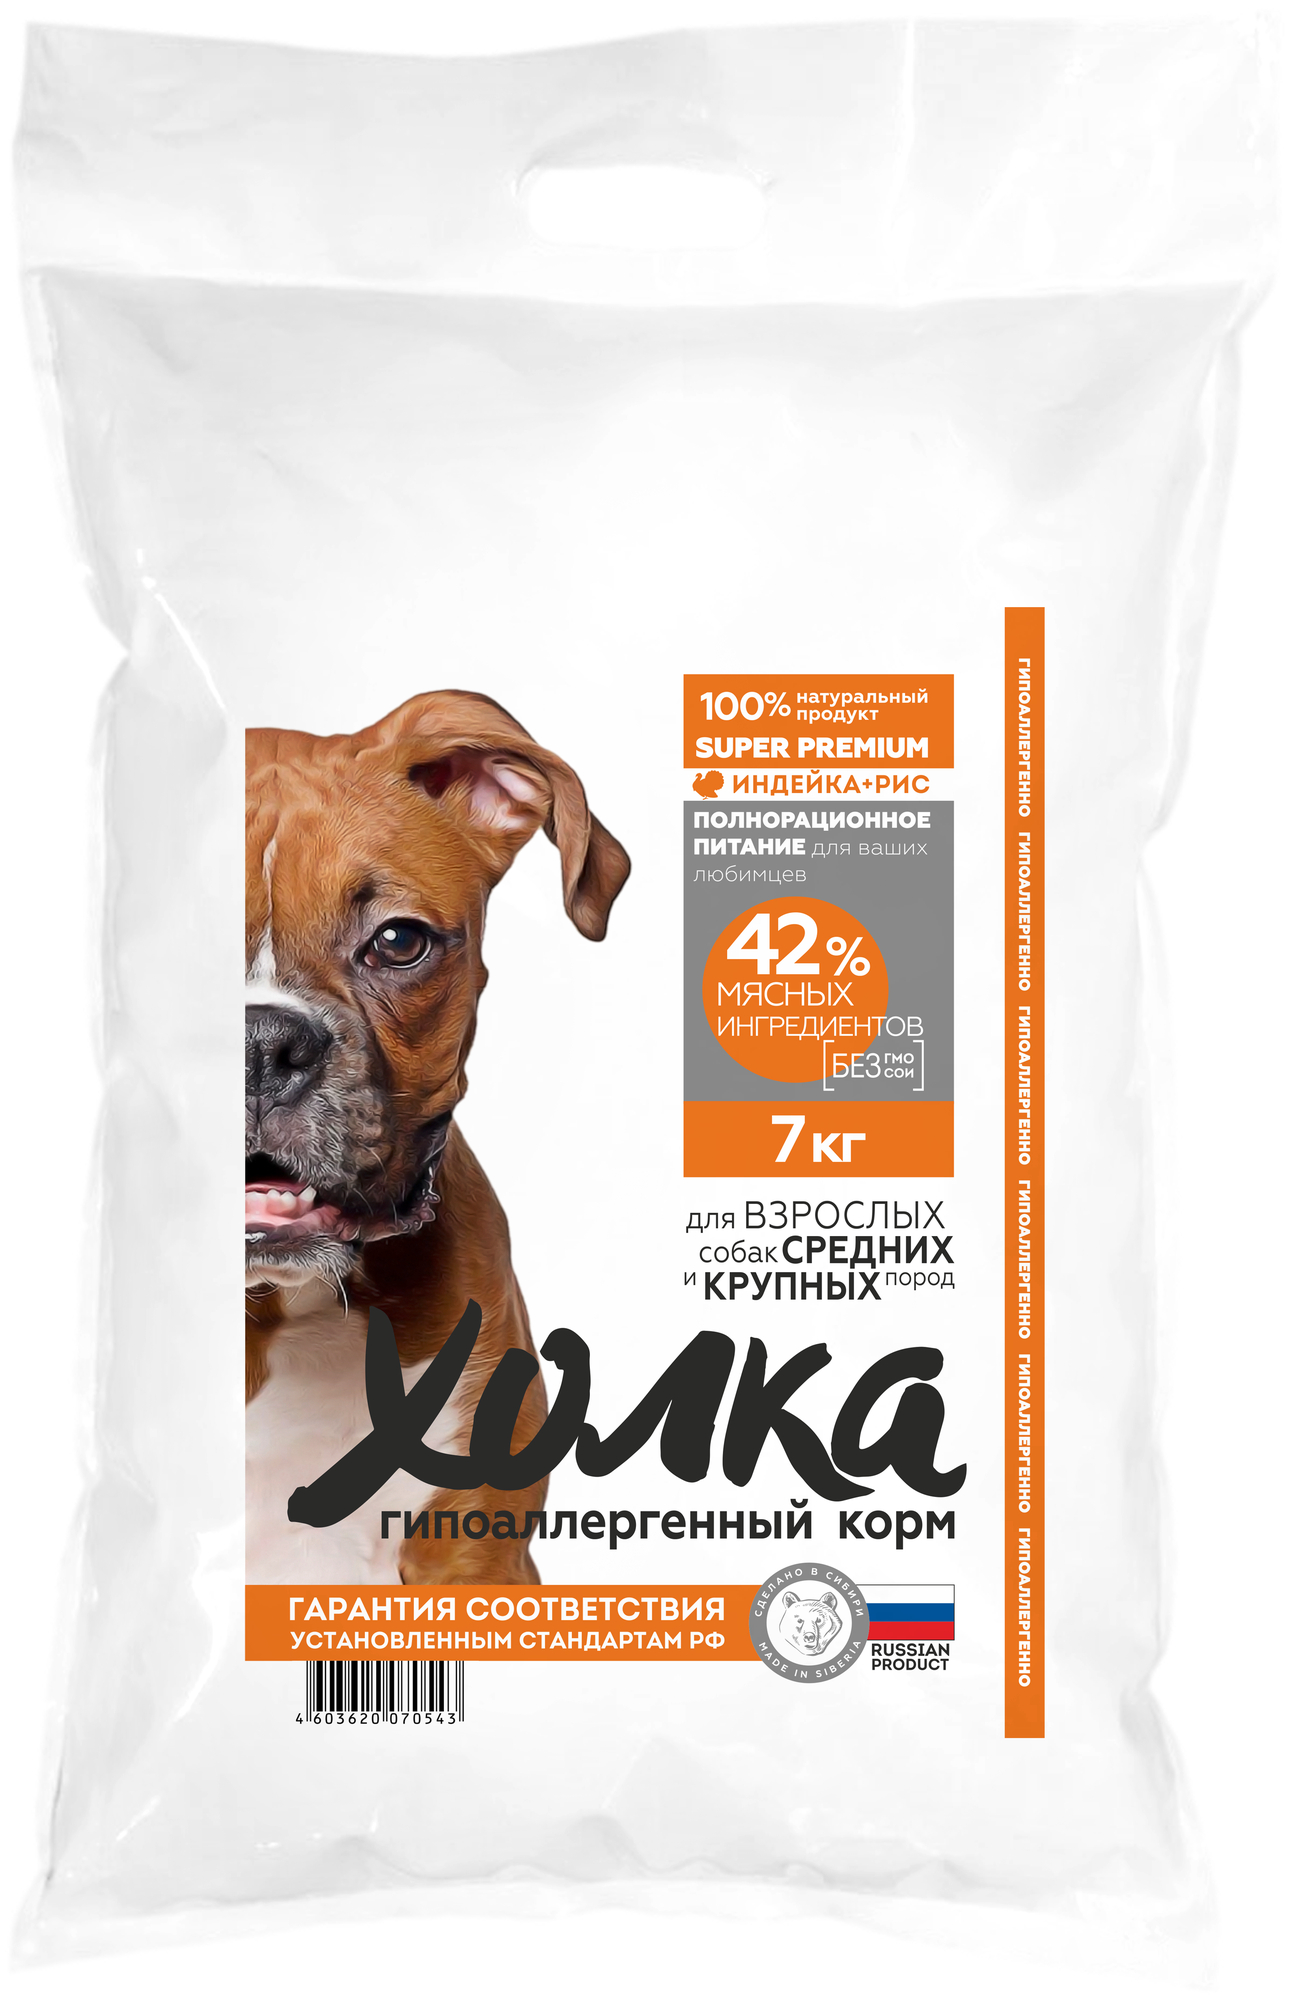 Холка Сухой корм гипоаллергенный для взрослых собак средних и крупных пород с индейкой и рисом, 7кг